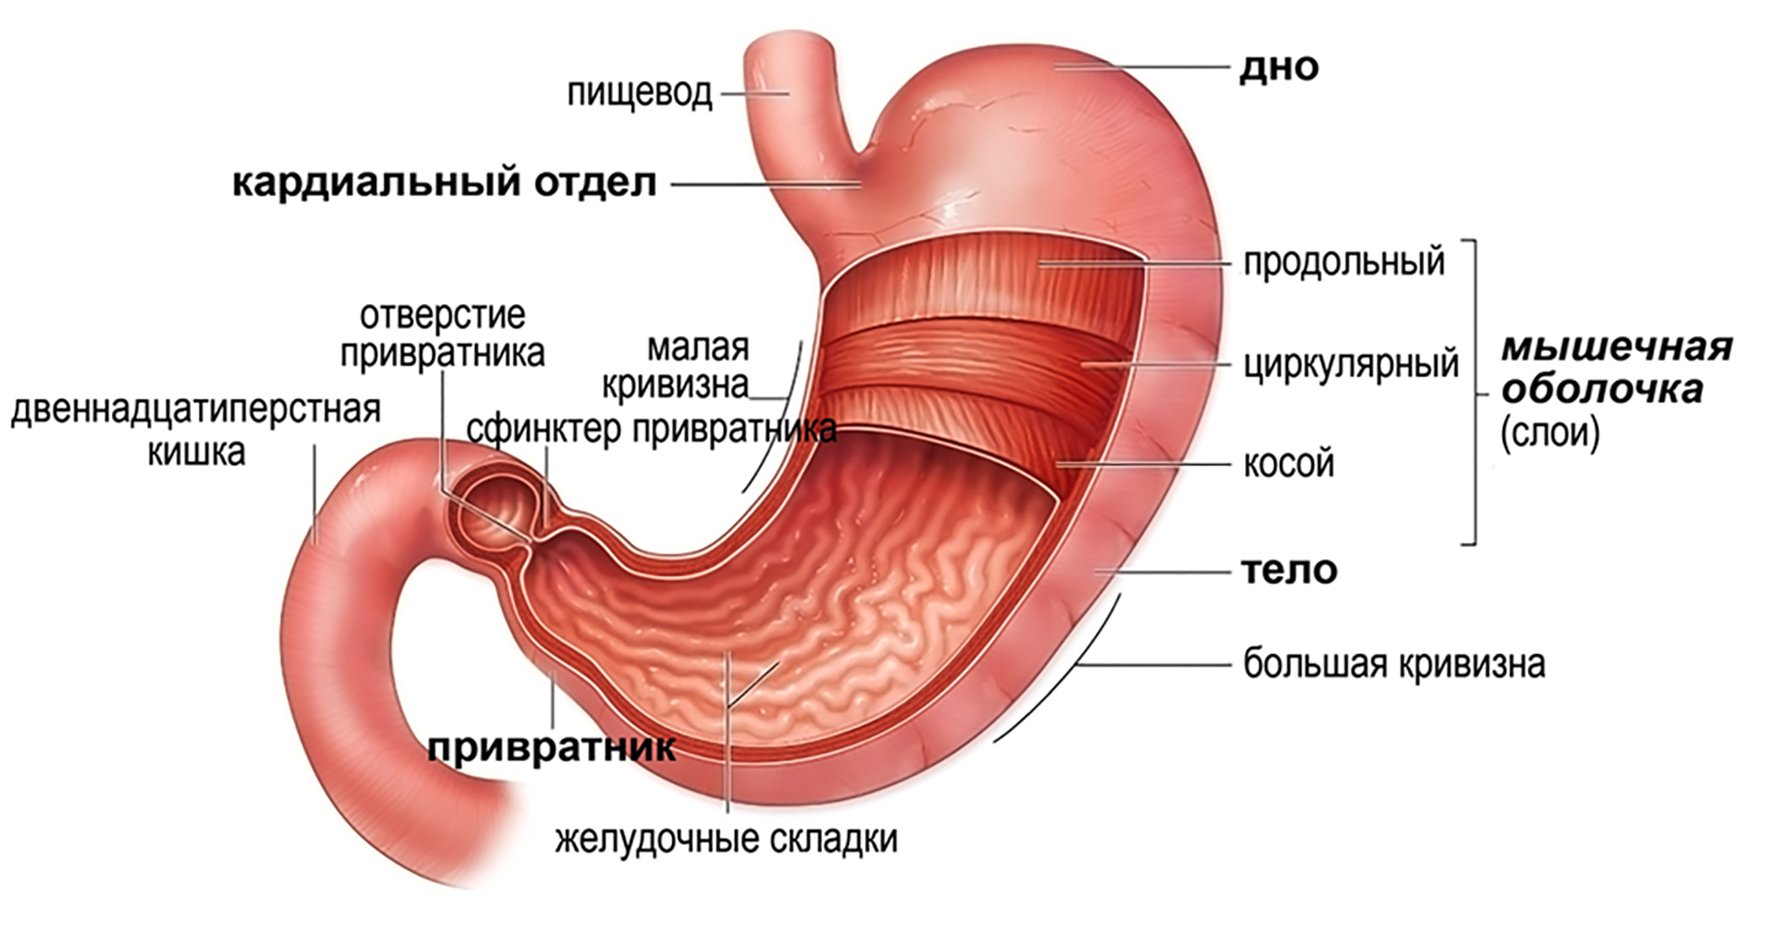 Строение желудка биология. Внешнее строение желудка анатомия. Желудок строение анатомия атлас. Строение желудка человека привратник. Привратник желудка анатомия.